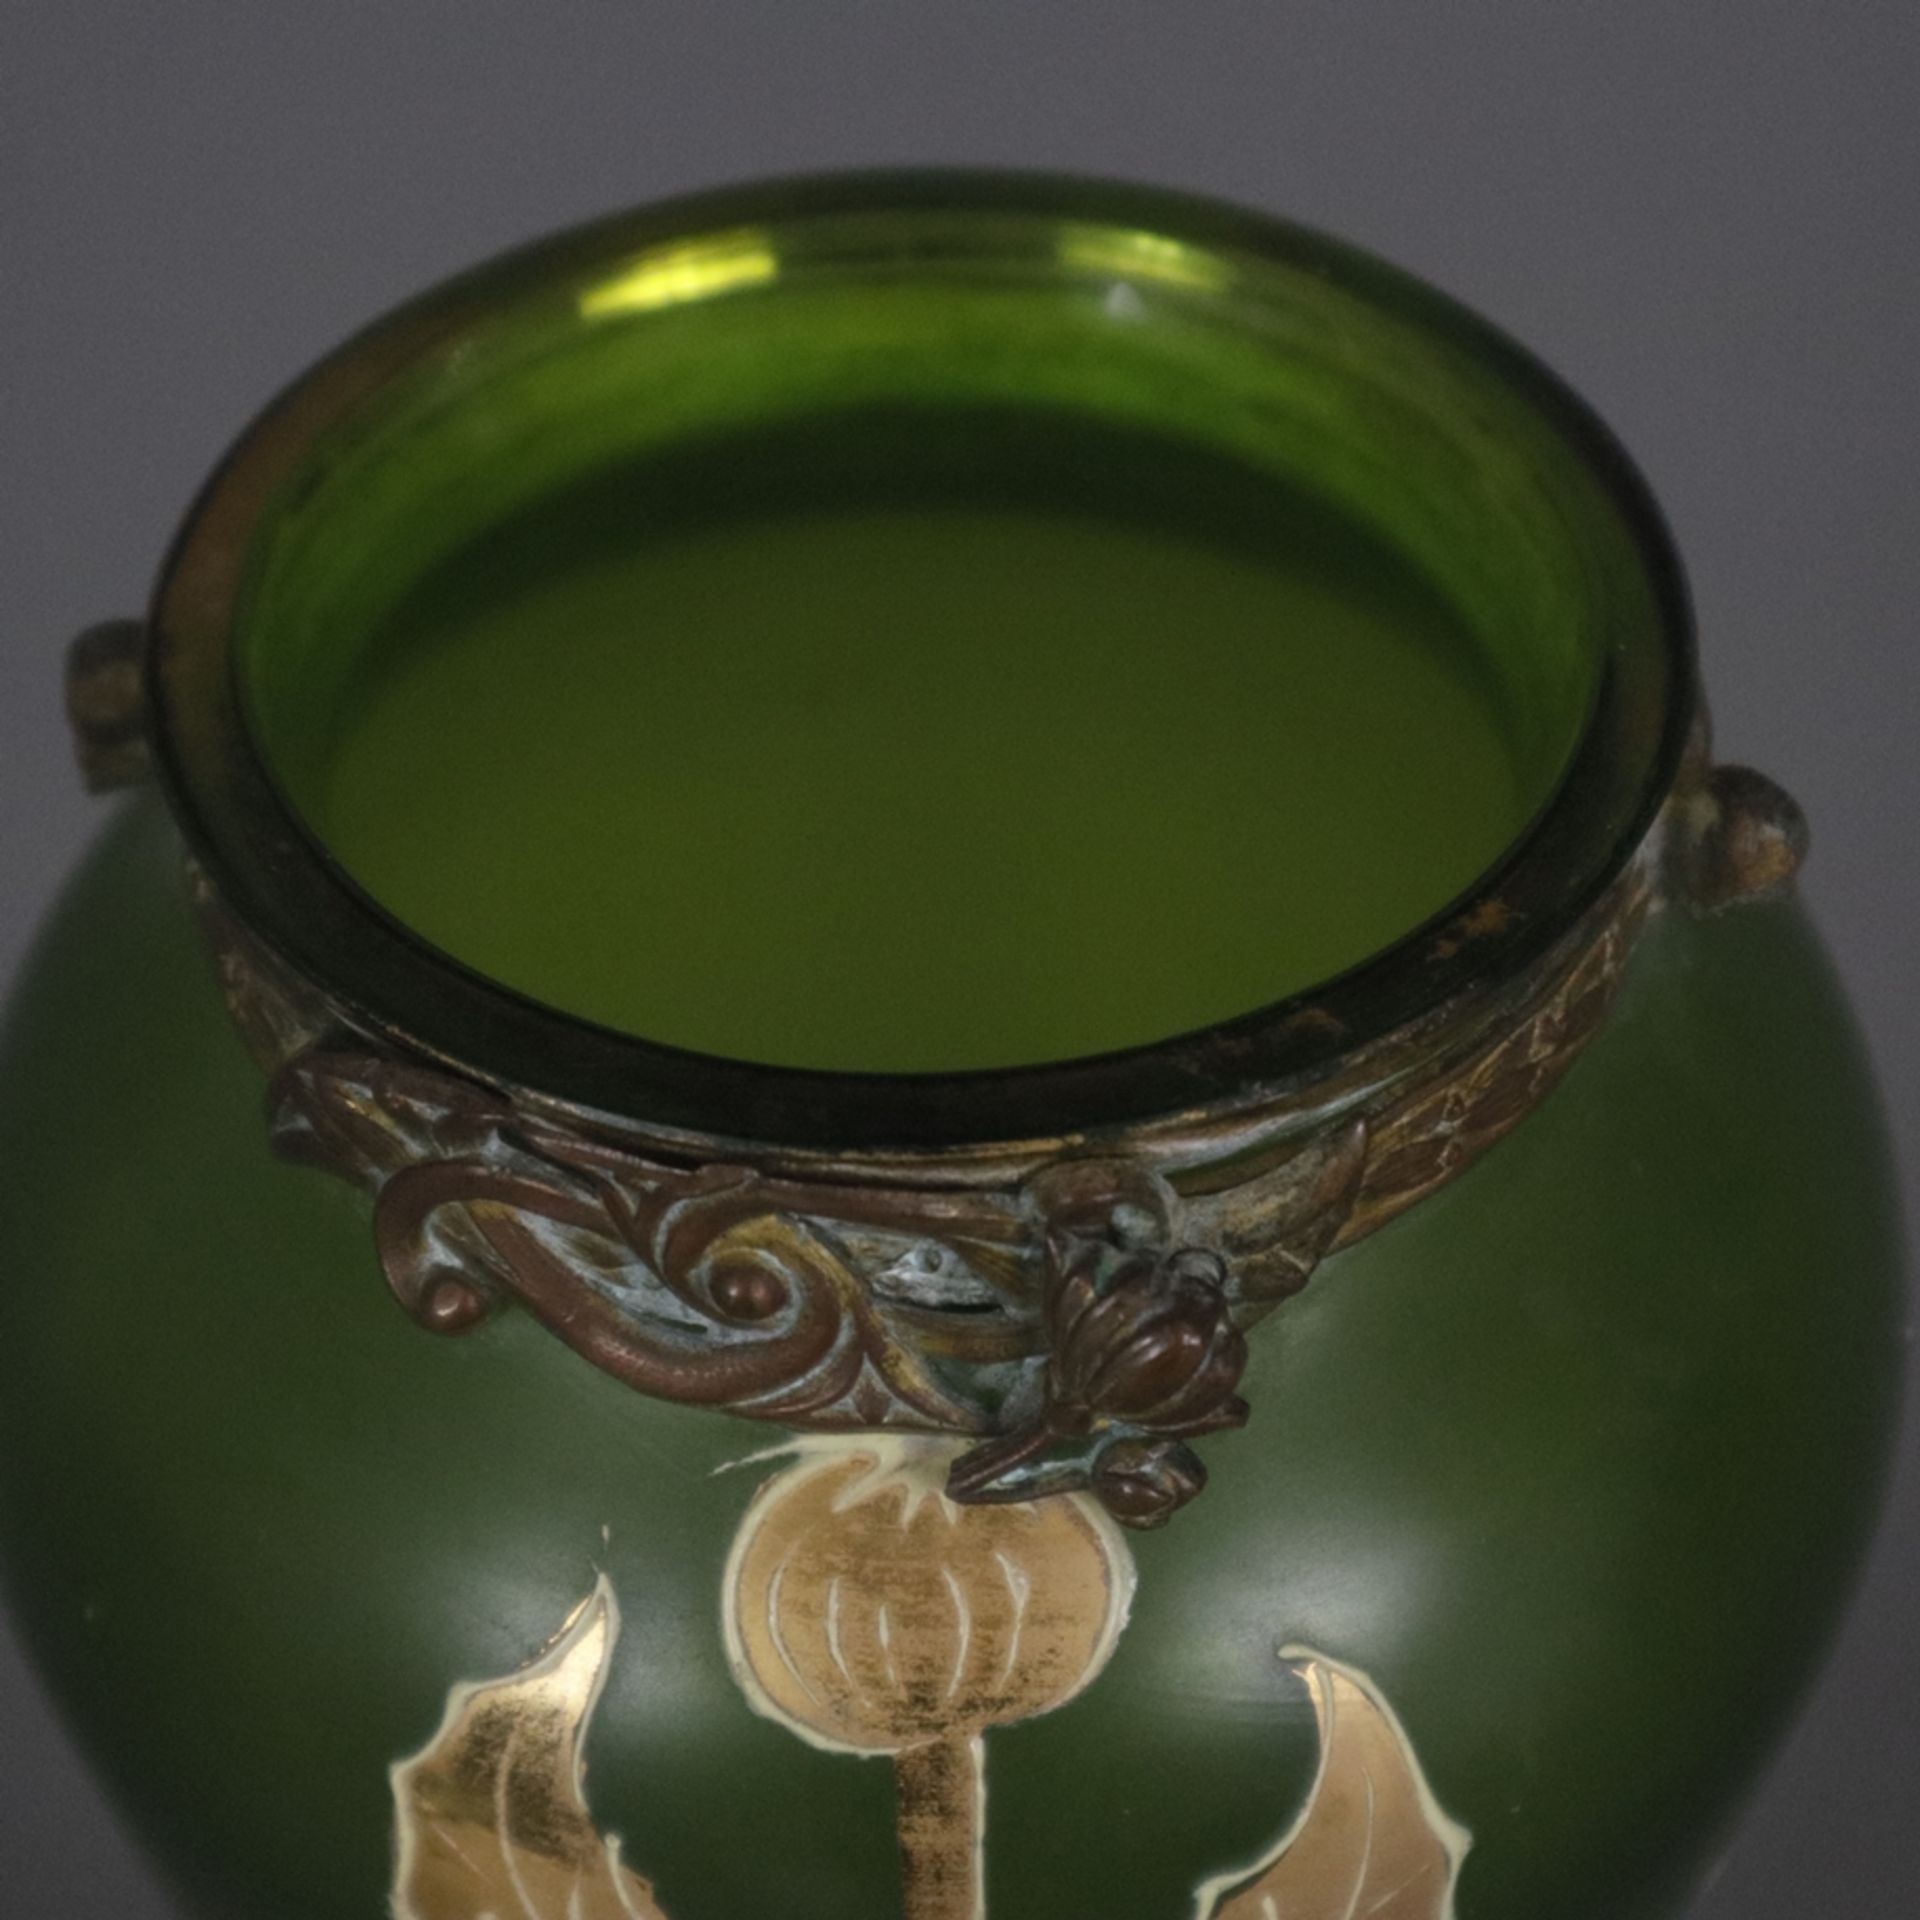 Jugendstil-Glasvase mit Metallmontur - wohl Frankreich um 1900, Klarglas mit grünem Unterfang, scha - Bild 3 aus 8